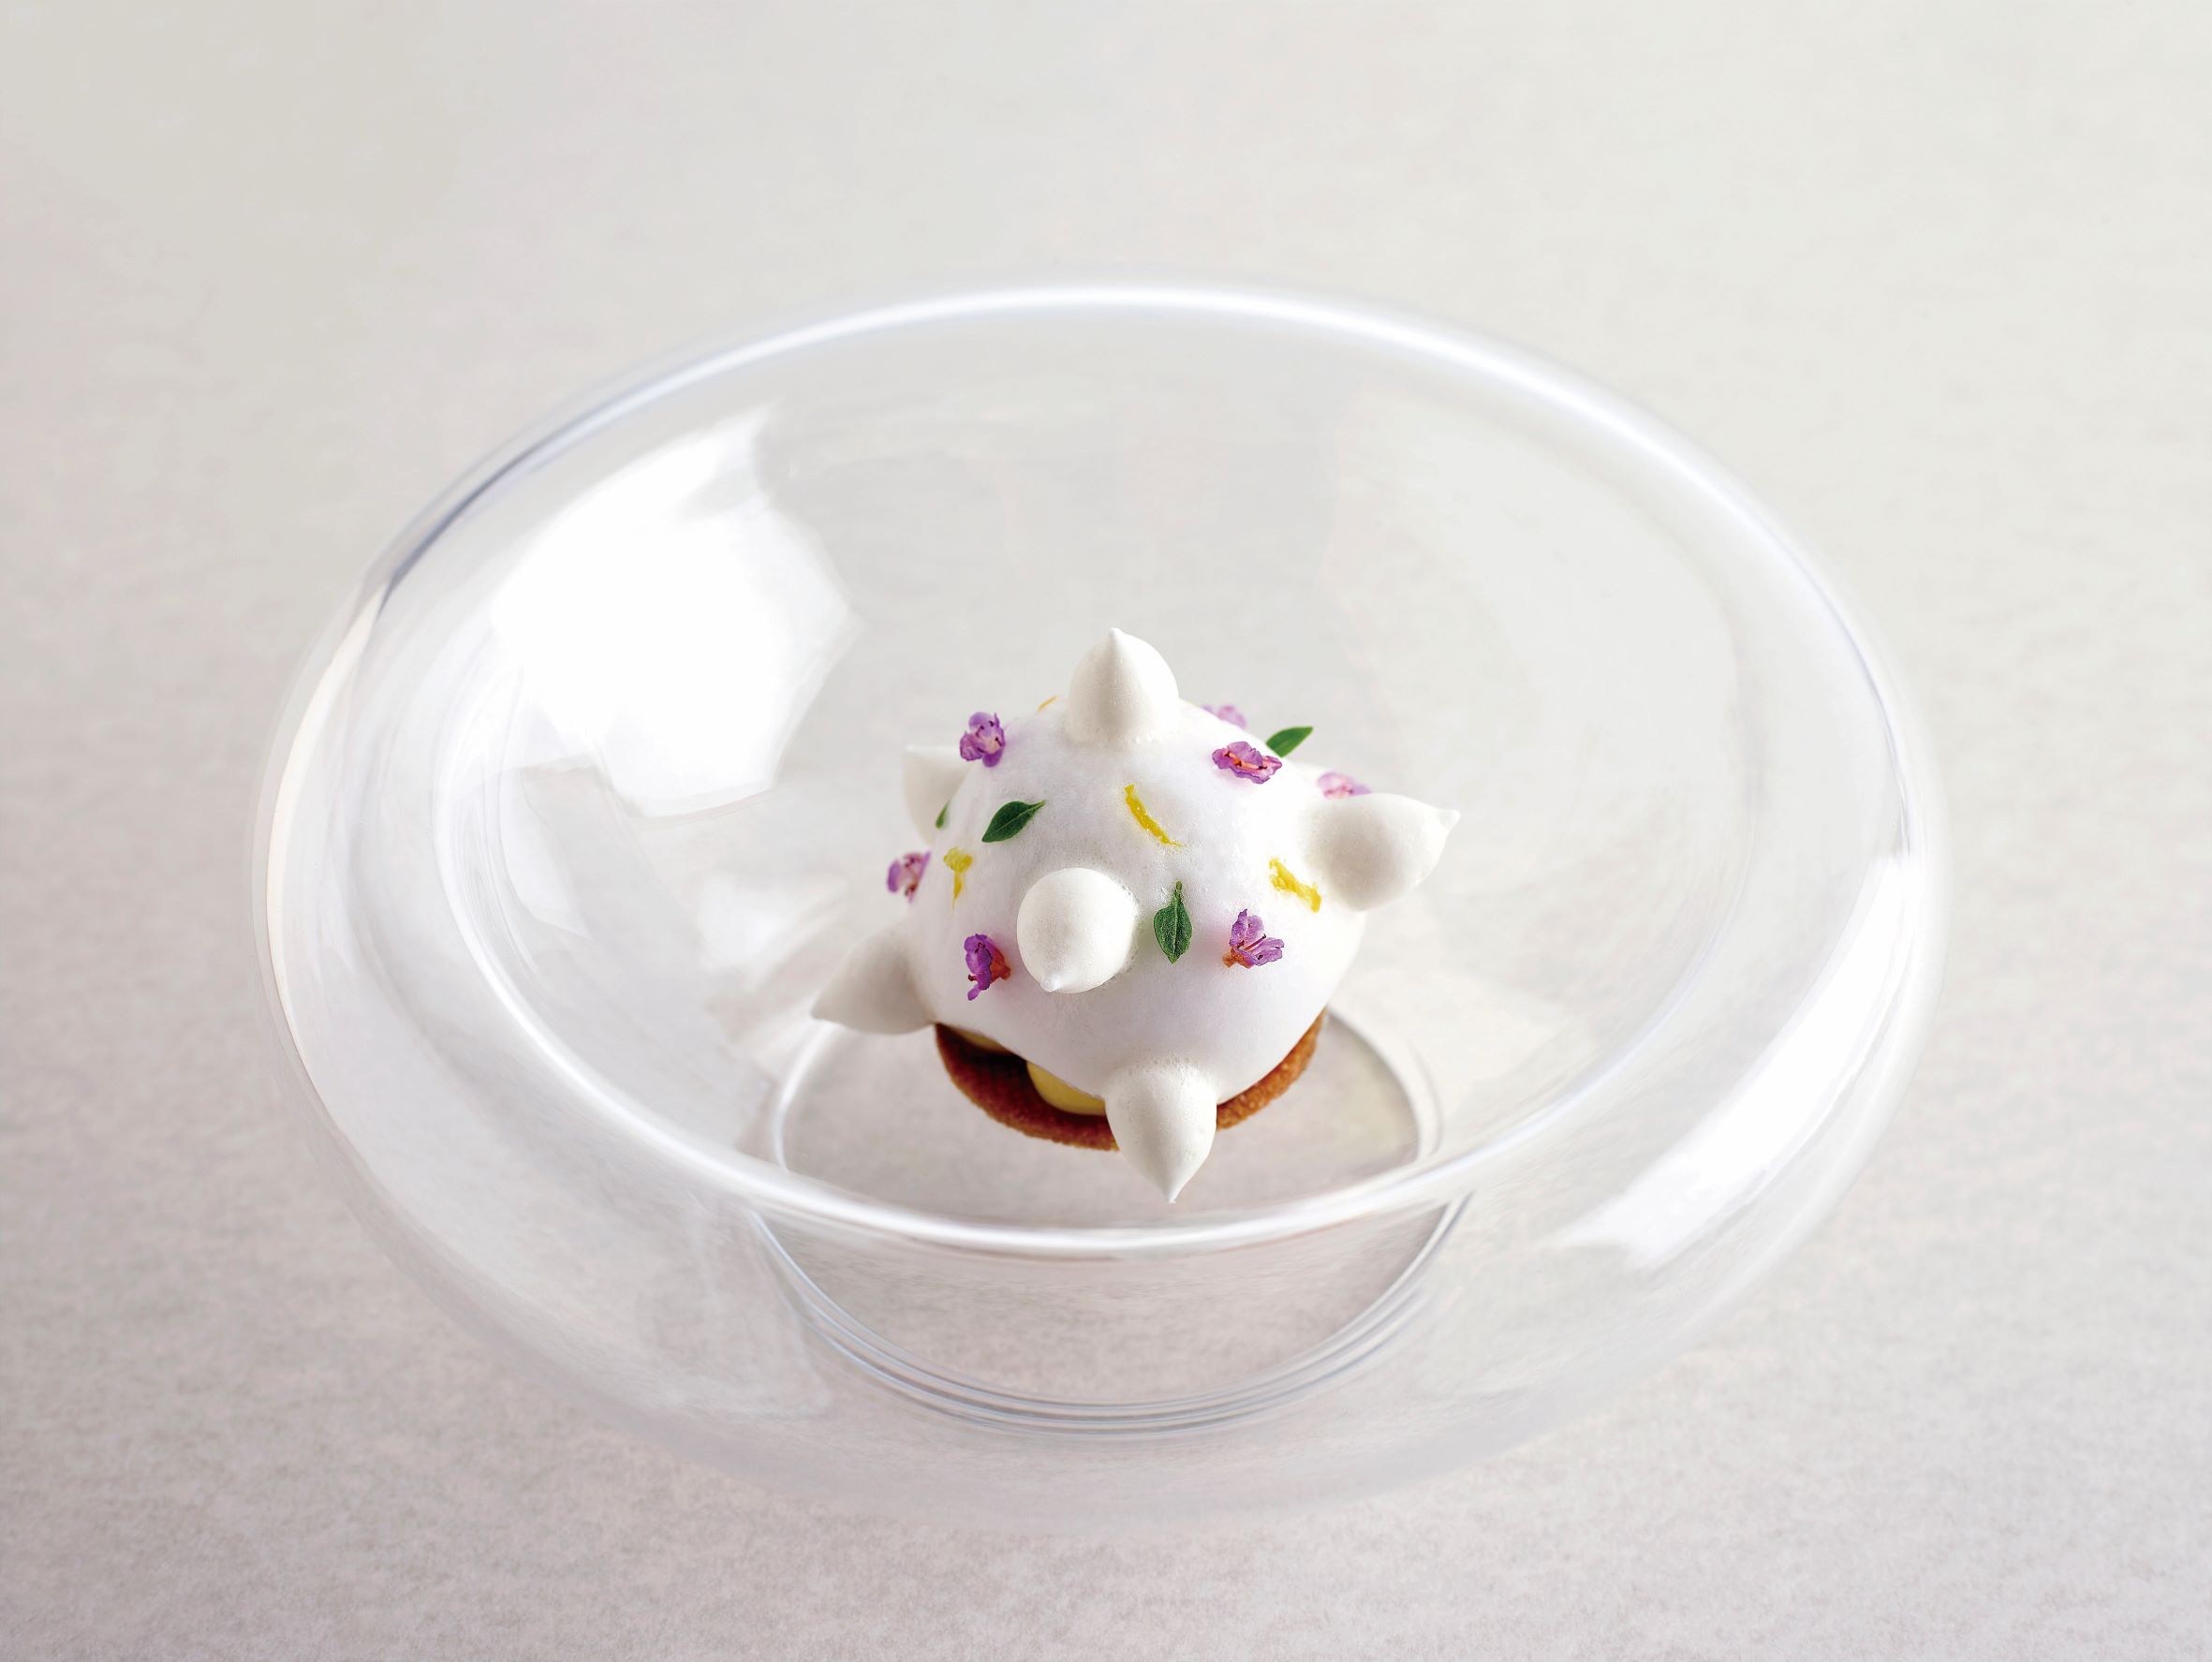 柚子塔是由布列塔尼酥餅搭配上紫蘇、羅勒，所呈現出的 Odette 經典法式甜點。